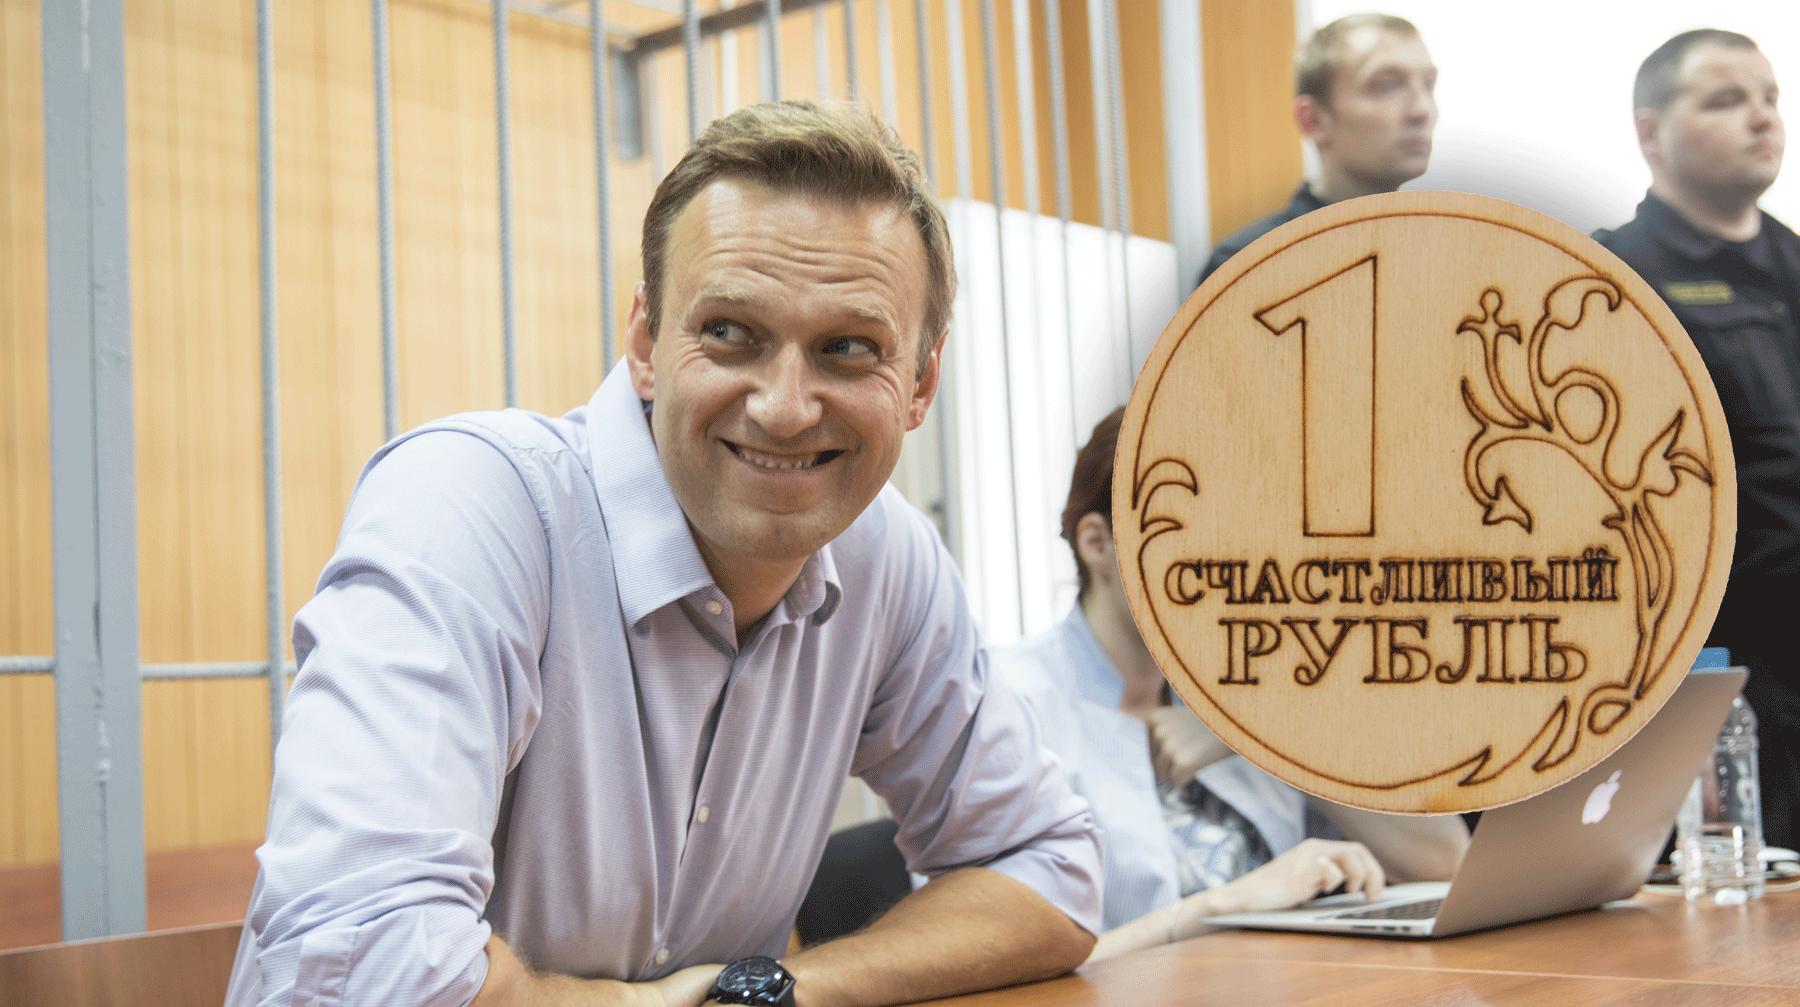 Dailystorm - Навальный проиграл в суде Михаилу Прохорову